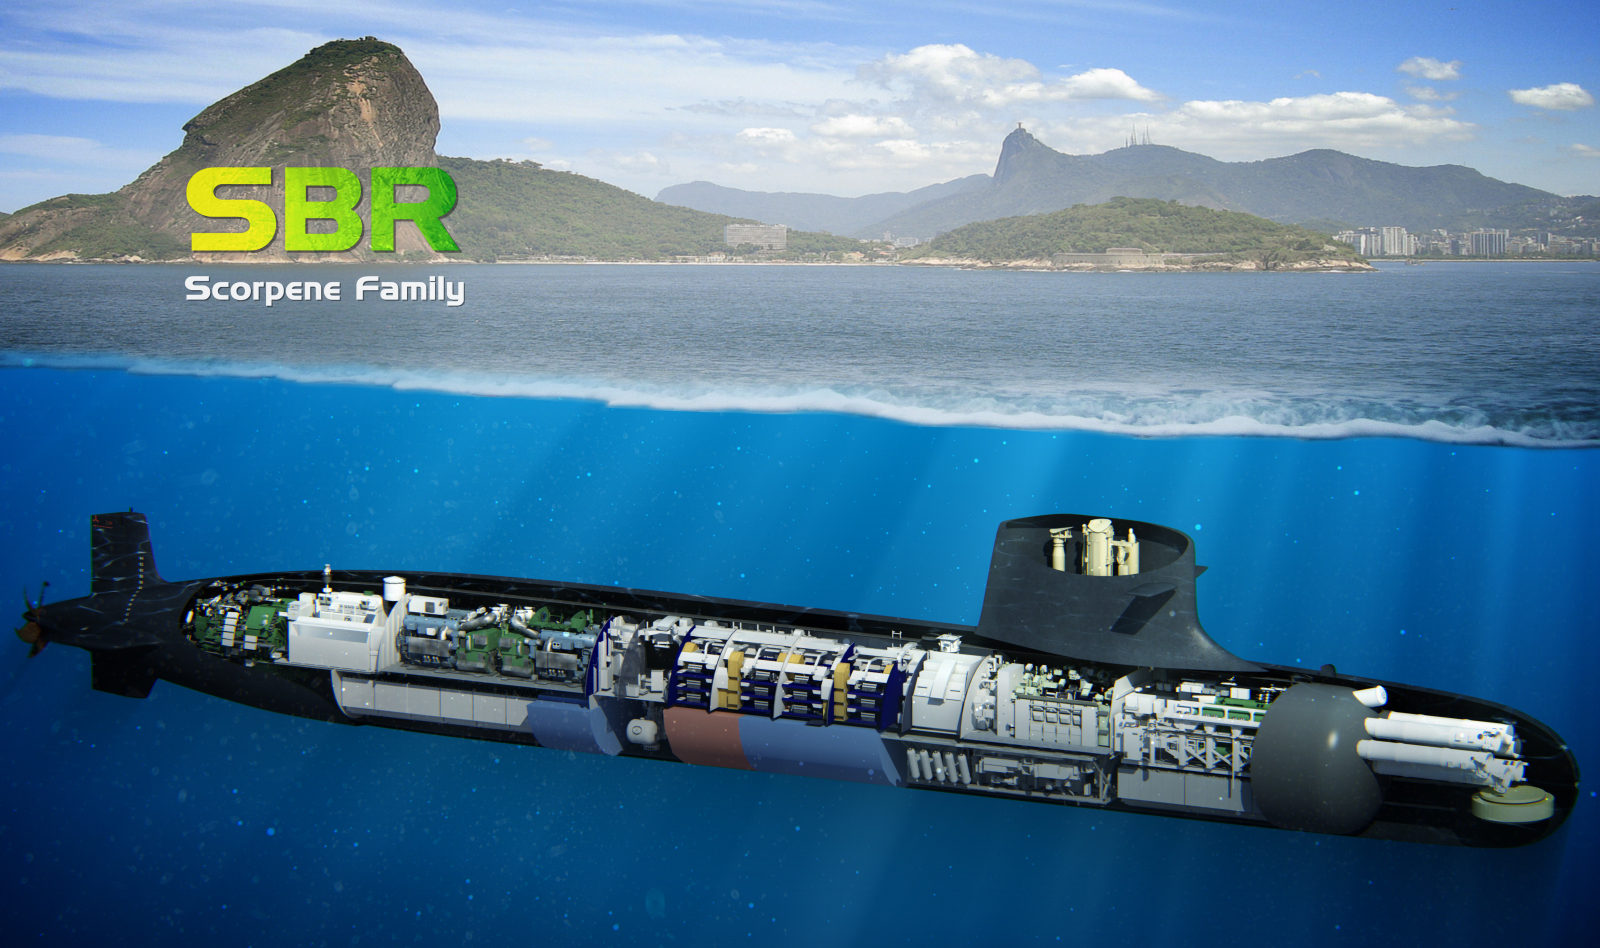 Brasil construye actualmente cuatro submarinos S-BR dentro del Programa Prosub